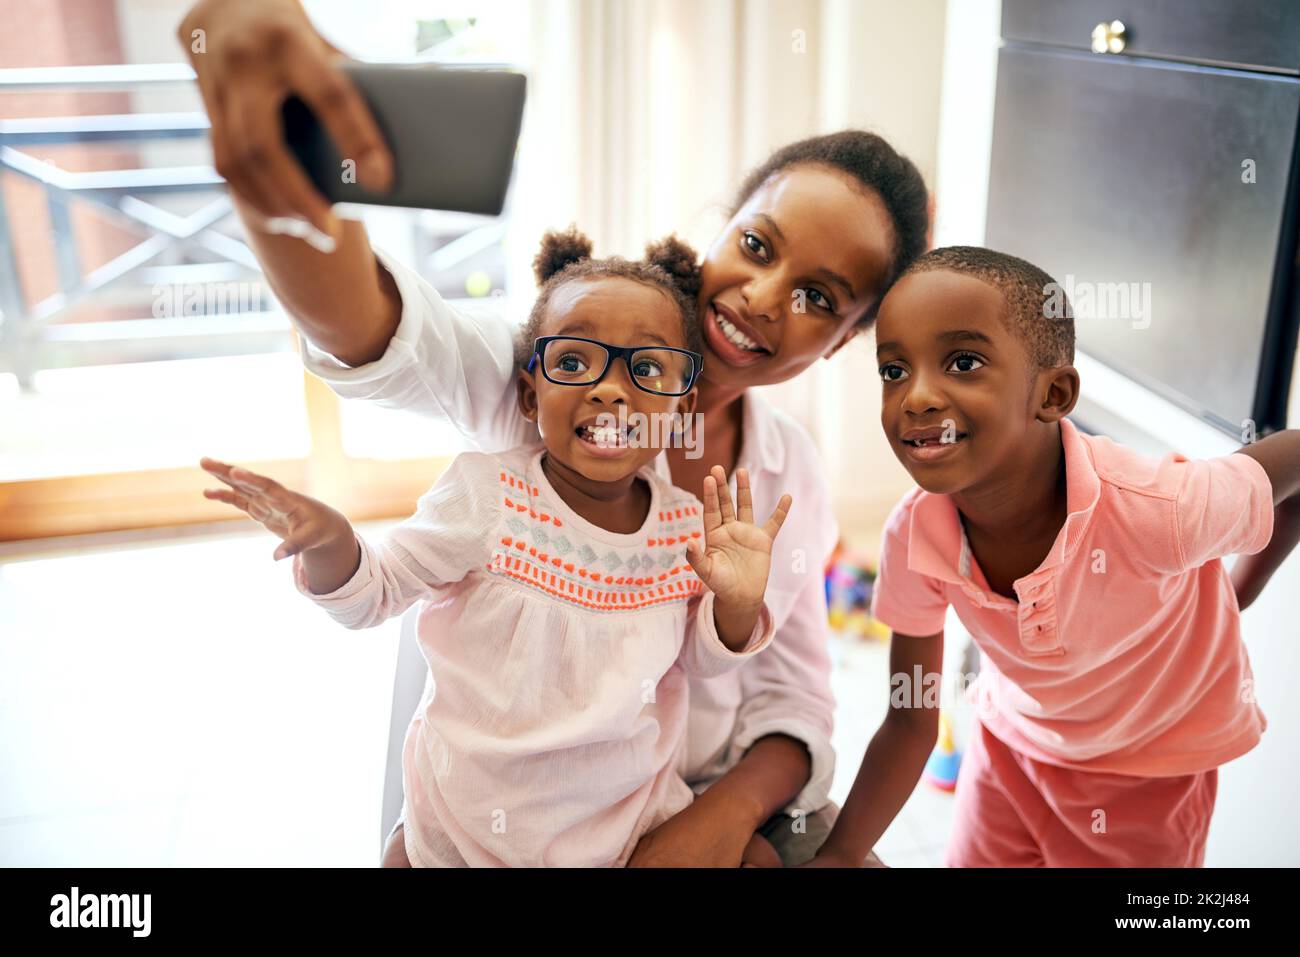 Glückliche Momente festhalten. Eine kurze Aufnahme einer liebevollen jungen Familie, die zu Hause Selfies macht. Stockfoto